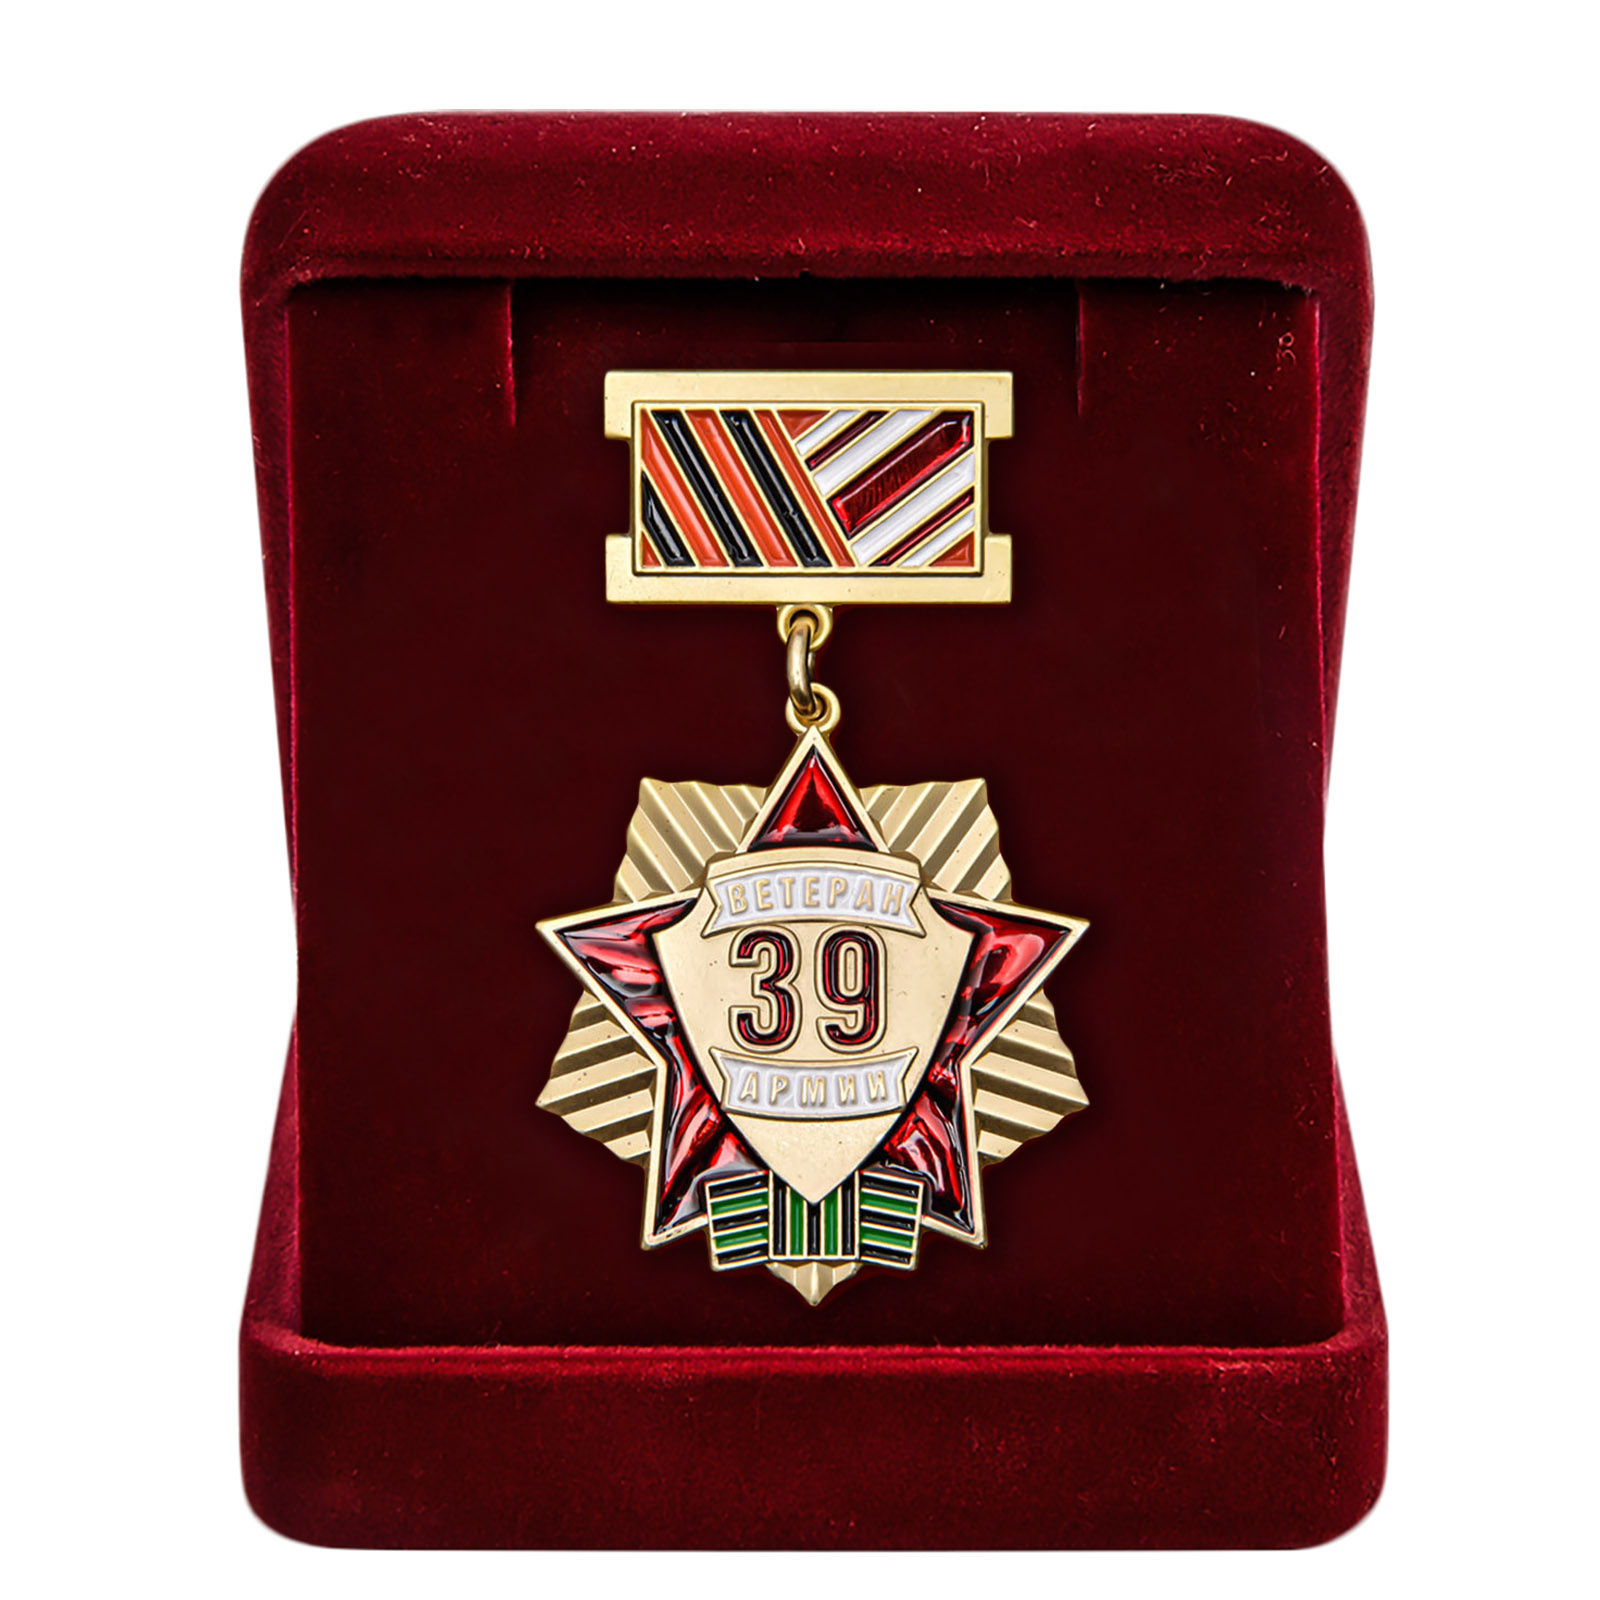 Купить медаль Ветеран 39 Армии по лучшей цене